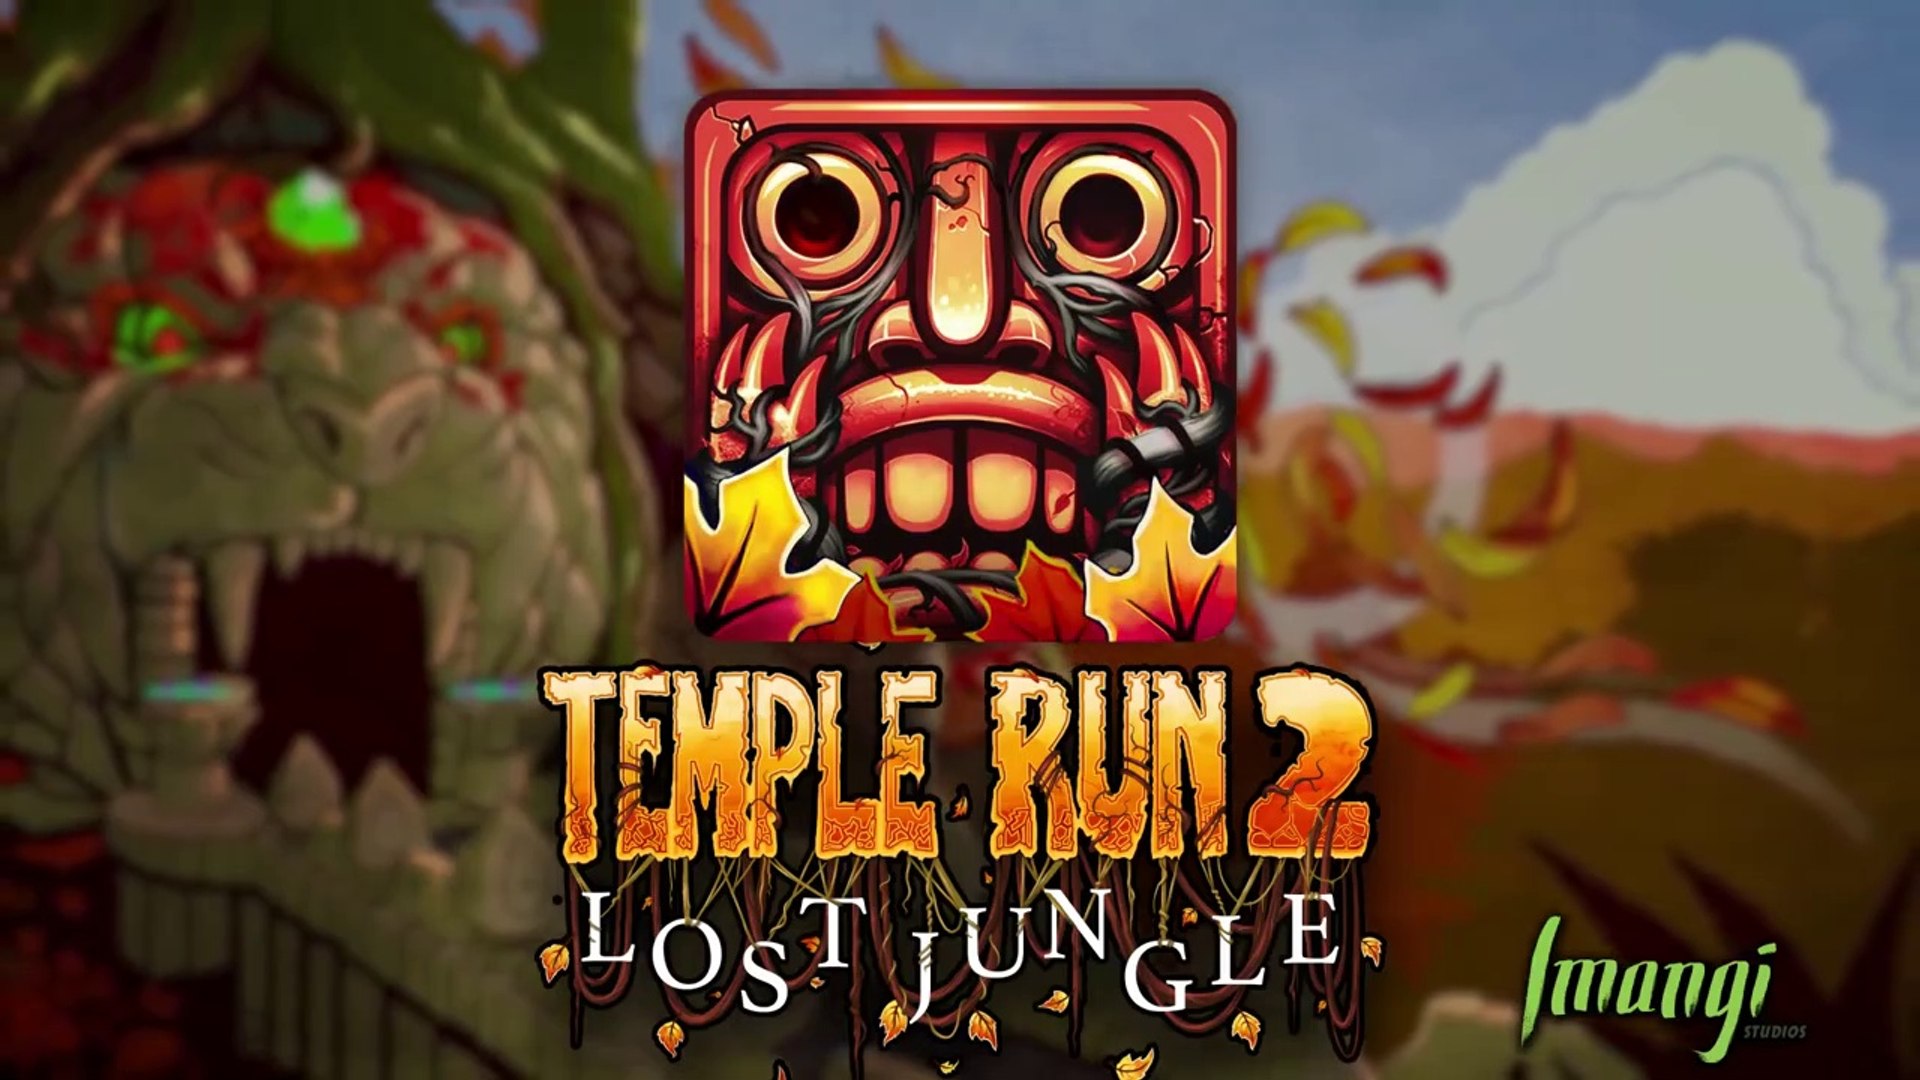 Temple Run 2 Lost Jungle Trailer 